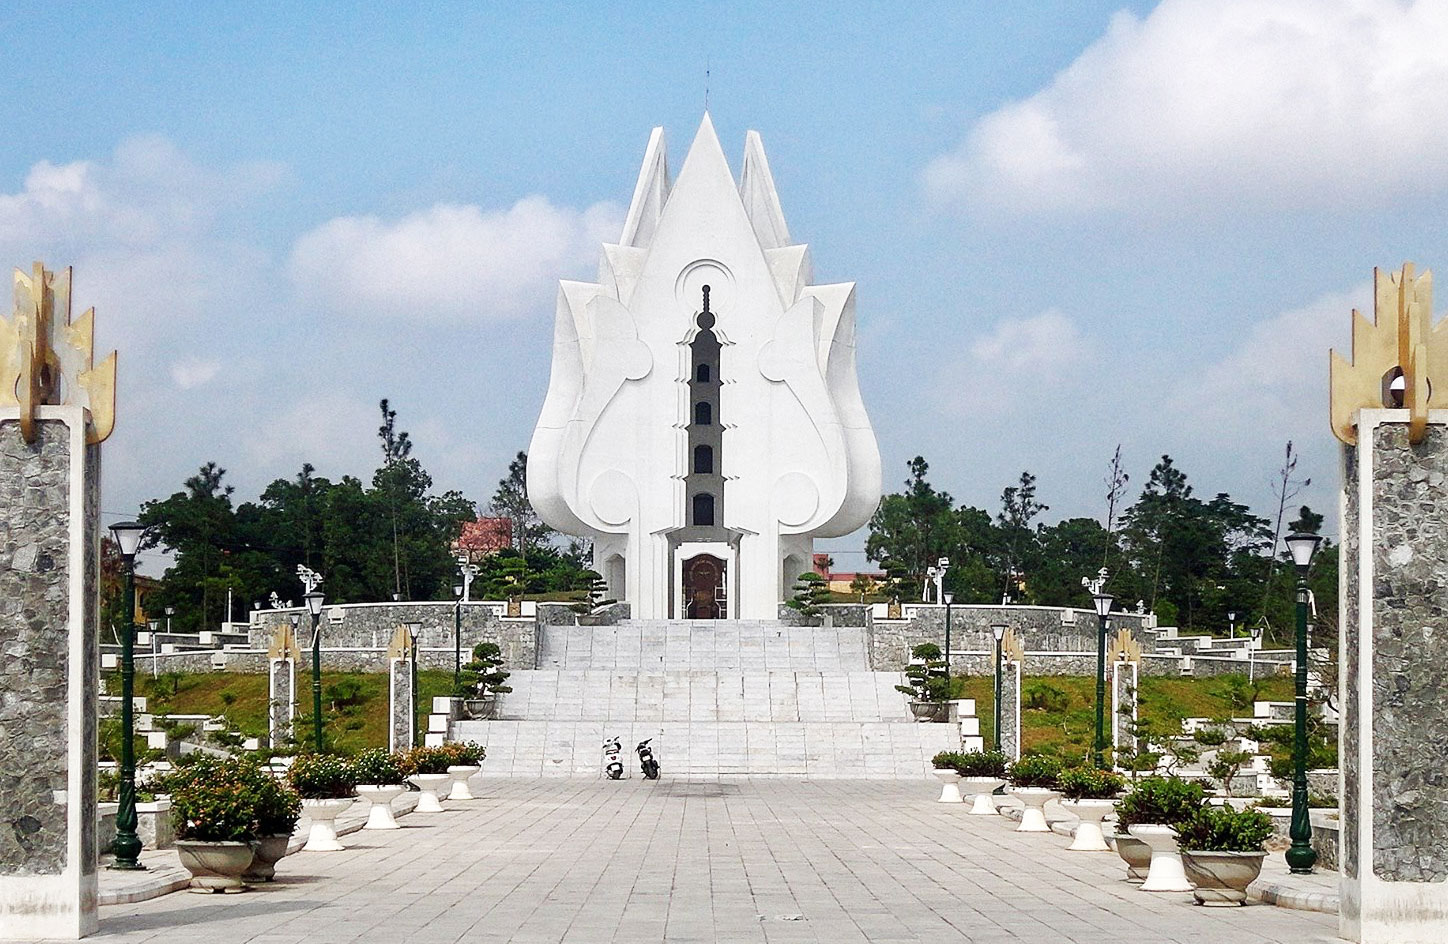  Đài tưởng niệm các Anh hùng liệt sĩ Bắc Ninh, một hình tượng kiến trúc độc đáo